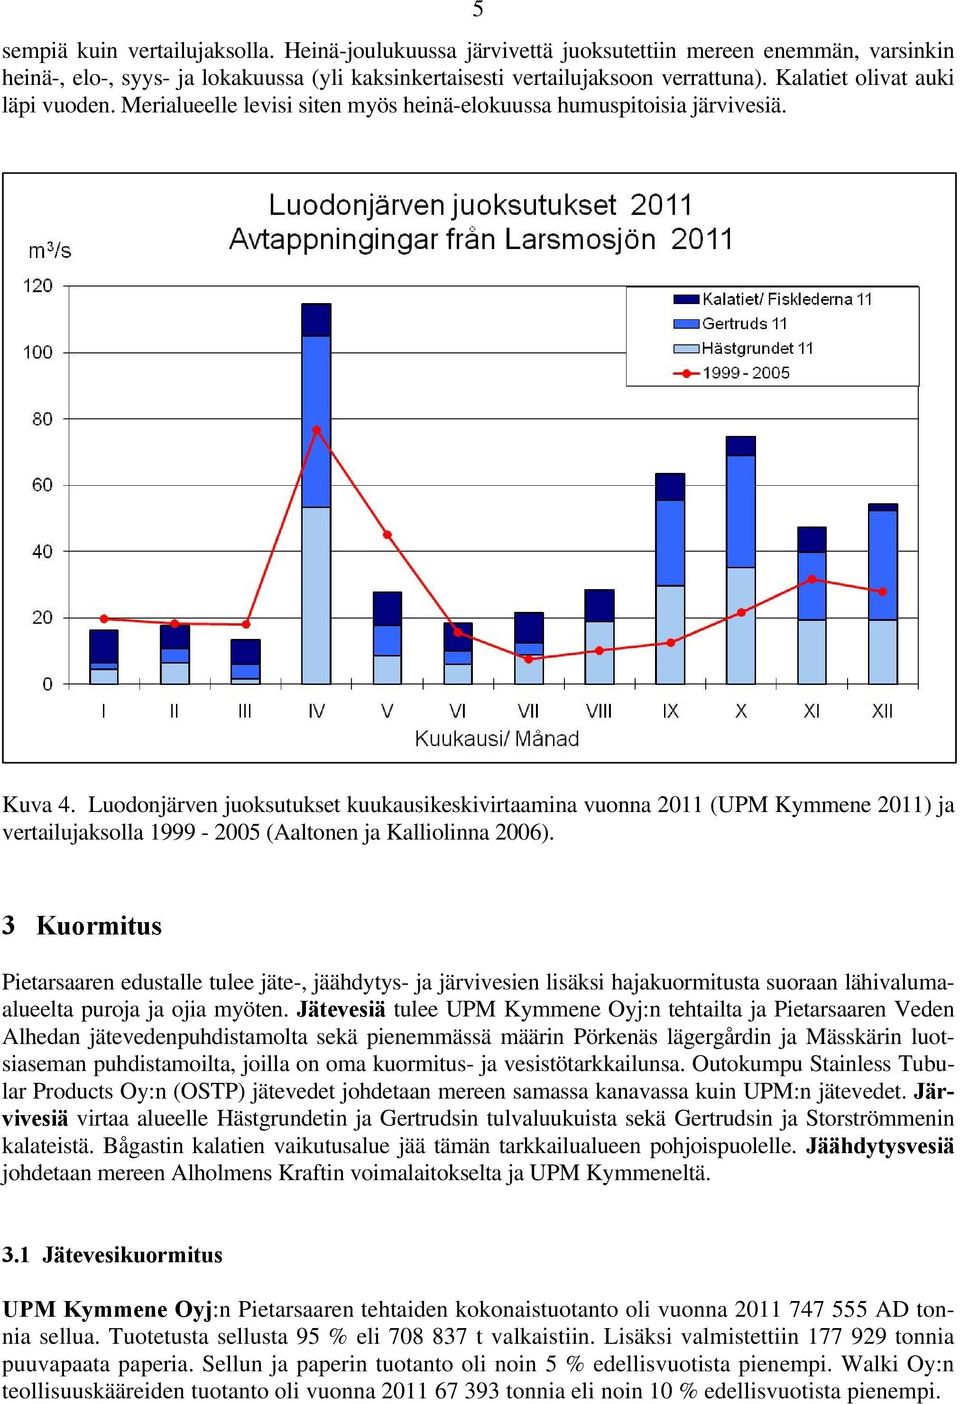 Luodonjärven juoksutukset kuukausikeskivirtaamina vuonna 2011 (UPM Kymmene 2011) ja vertailujaksolla 1999-2005 (Aaltonen ja Kalliolinna 2006).